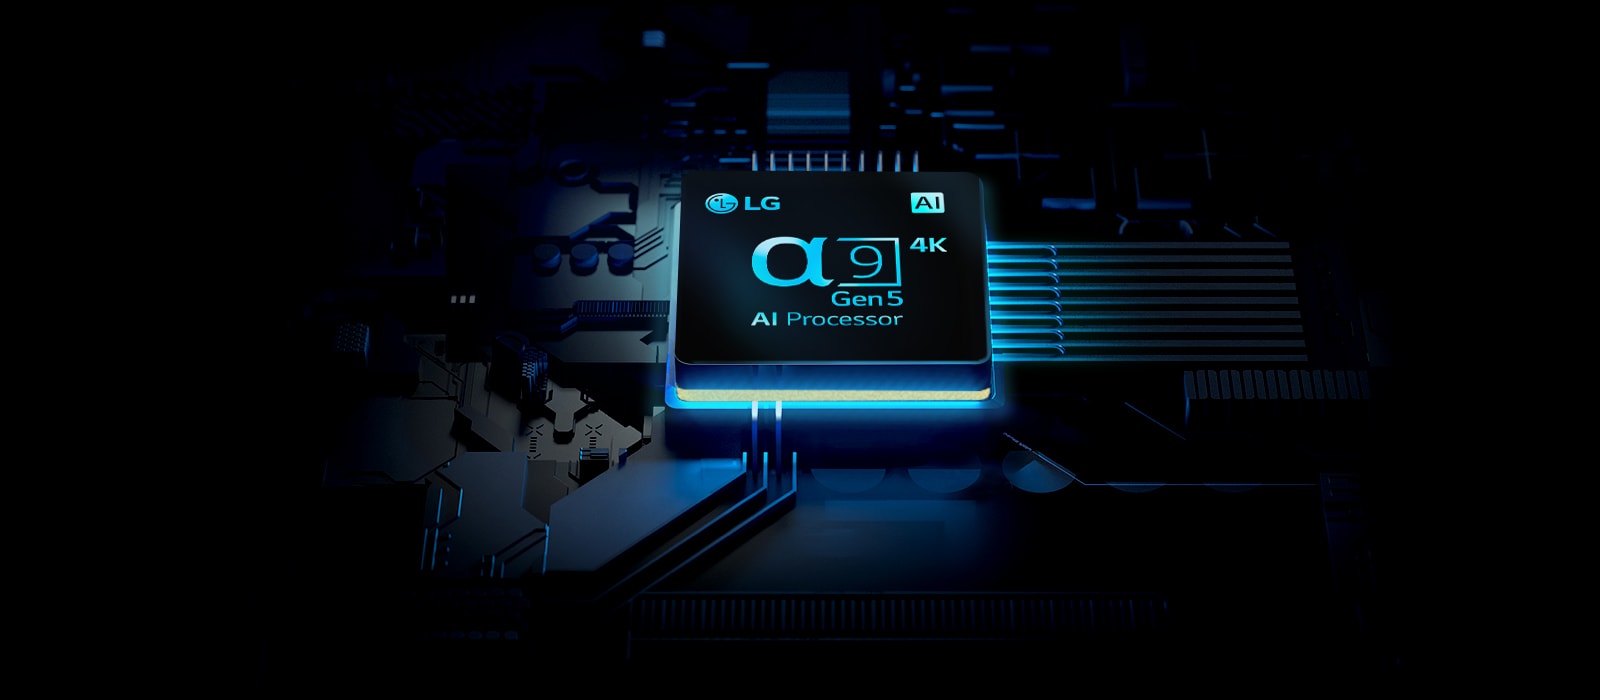 Światło promieniuje z układu 4K procesora LG ⍺9 Gen5 AI.